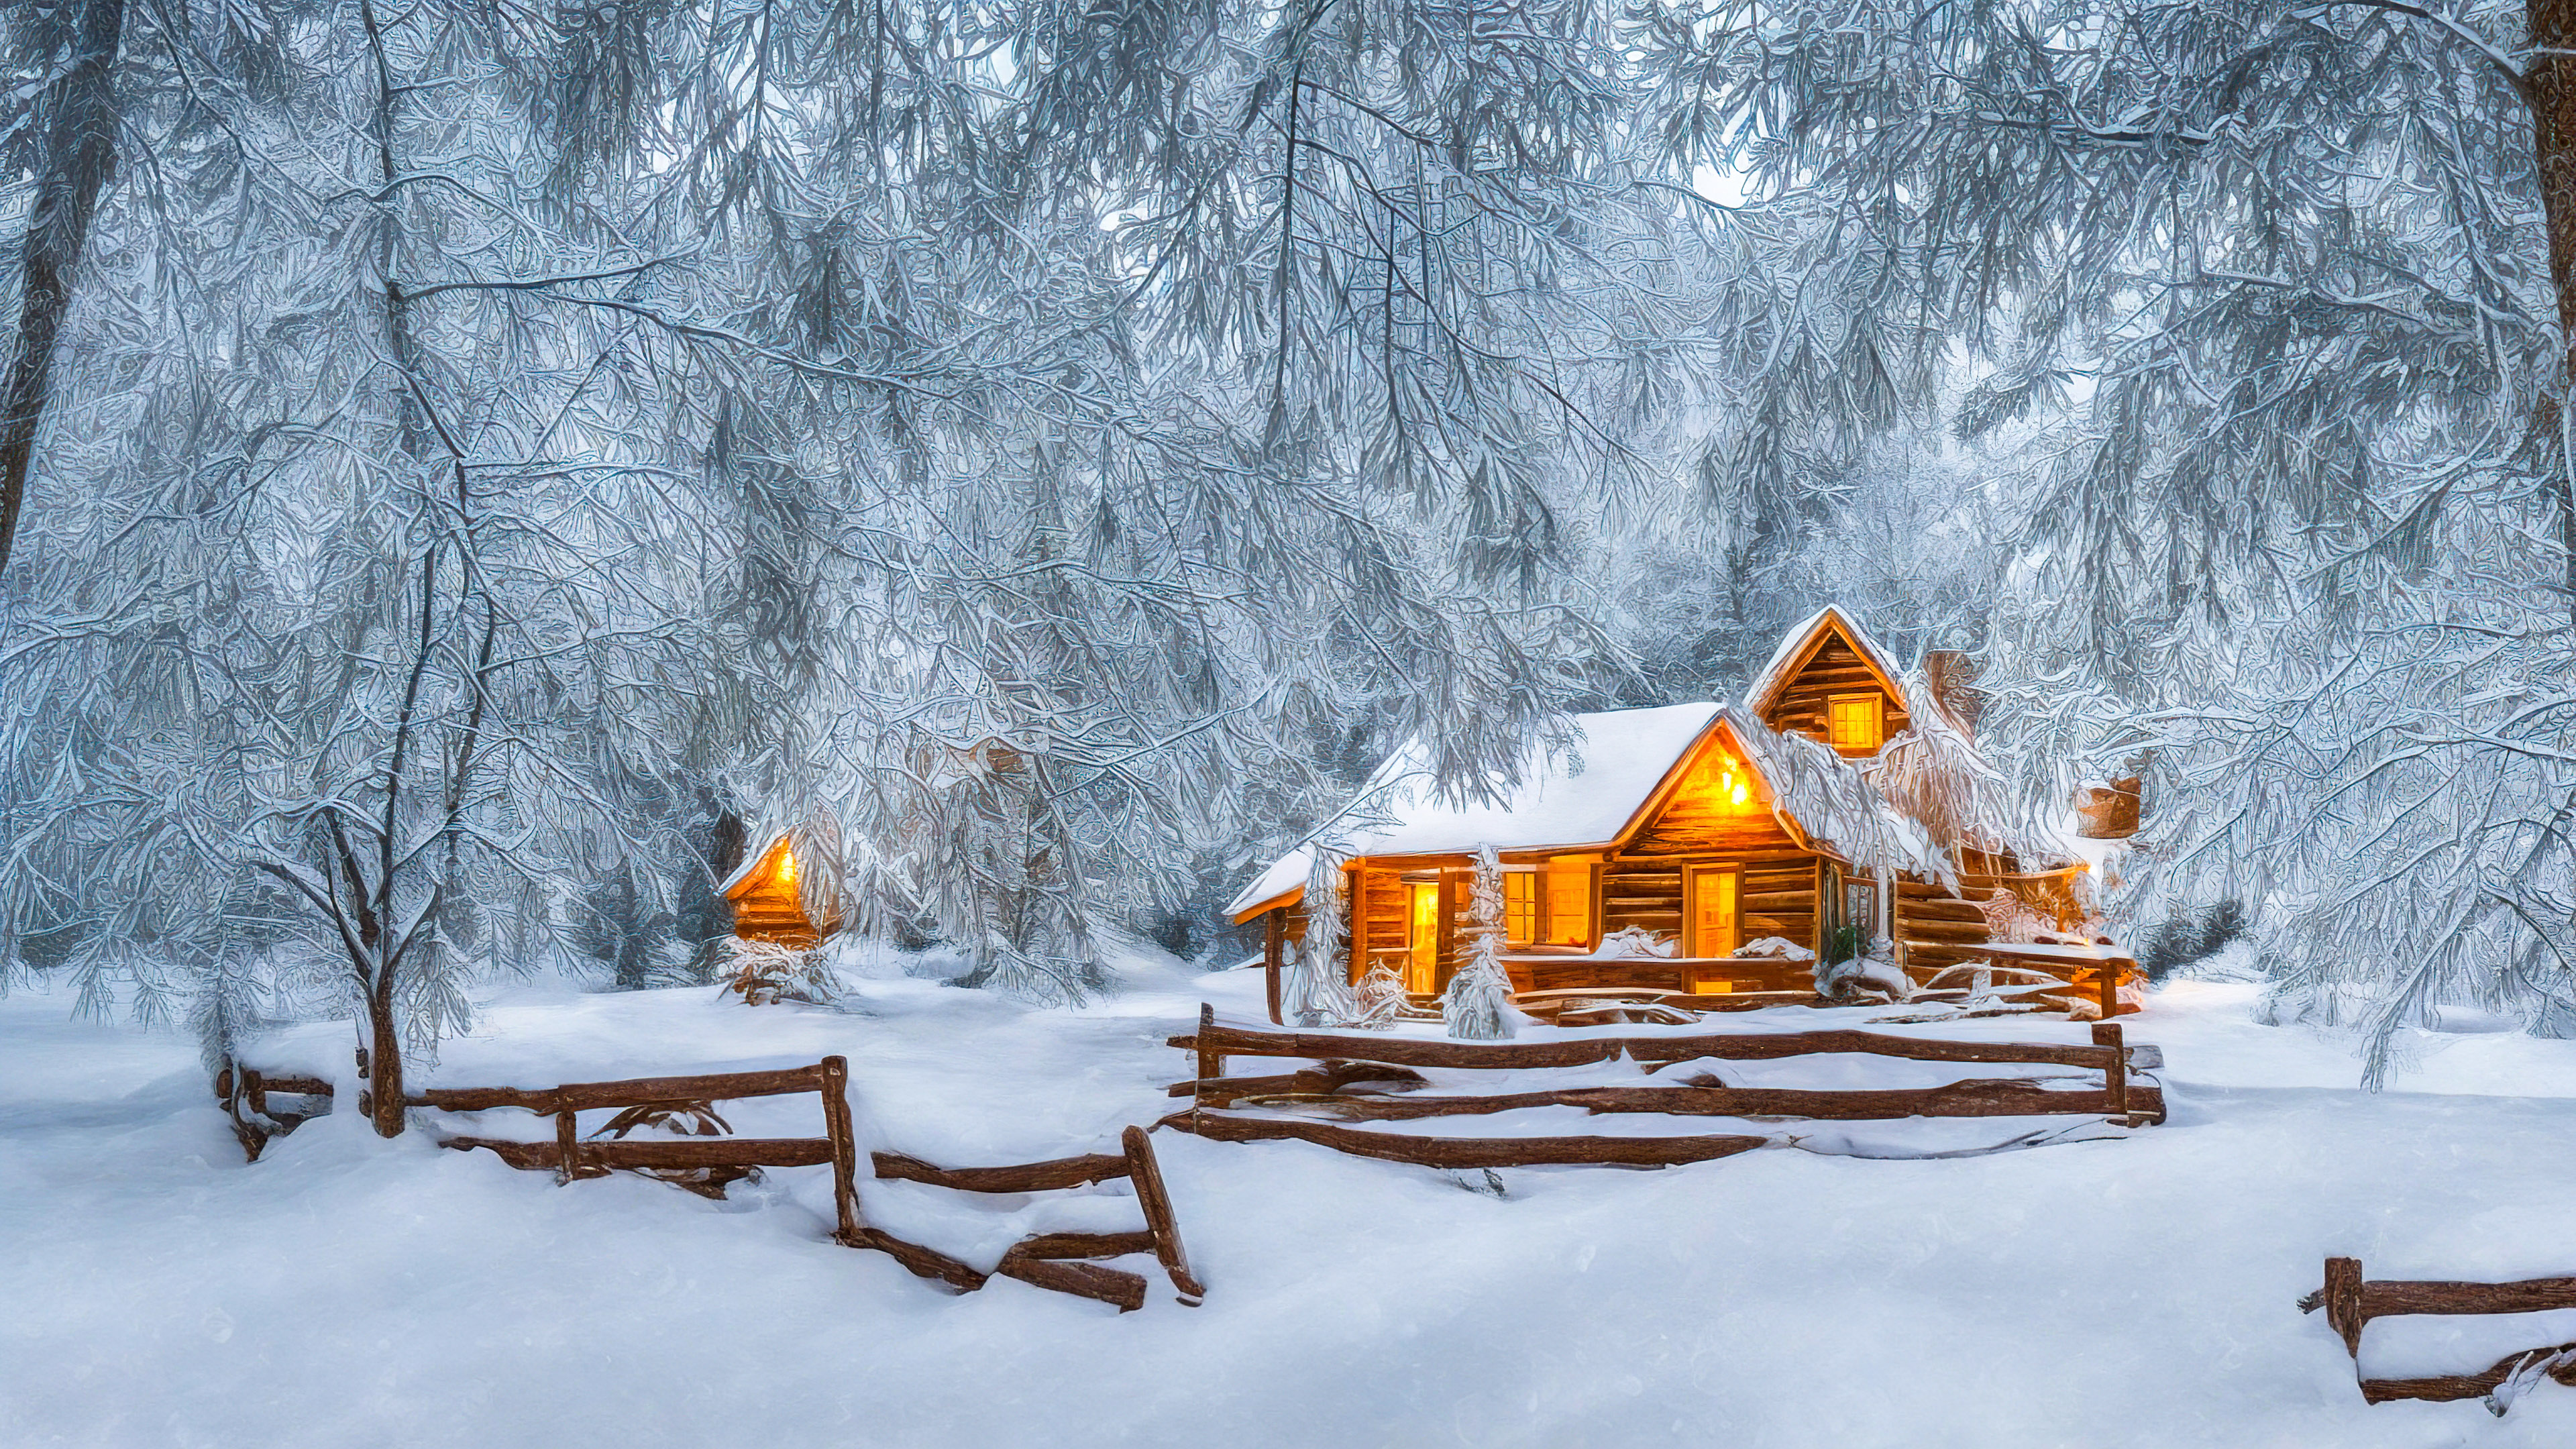 Vivez la tranquillité de nos fonds d'écran en HD des paysages en résolution 1920x1080, mettant en scène un merveilleux paysage hivernal avec des arbres couverts de neige et une cabane confortable ornée de lumières de fête, et laissez votre écran devenir un portail vers un refuge paisible sous la neige.